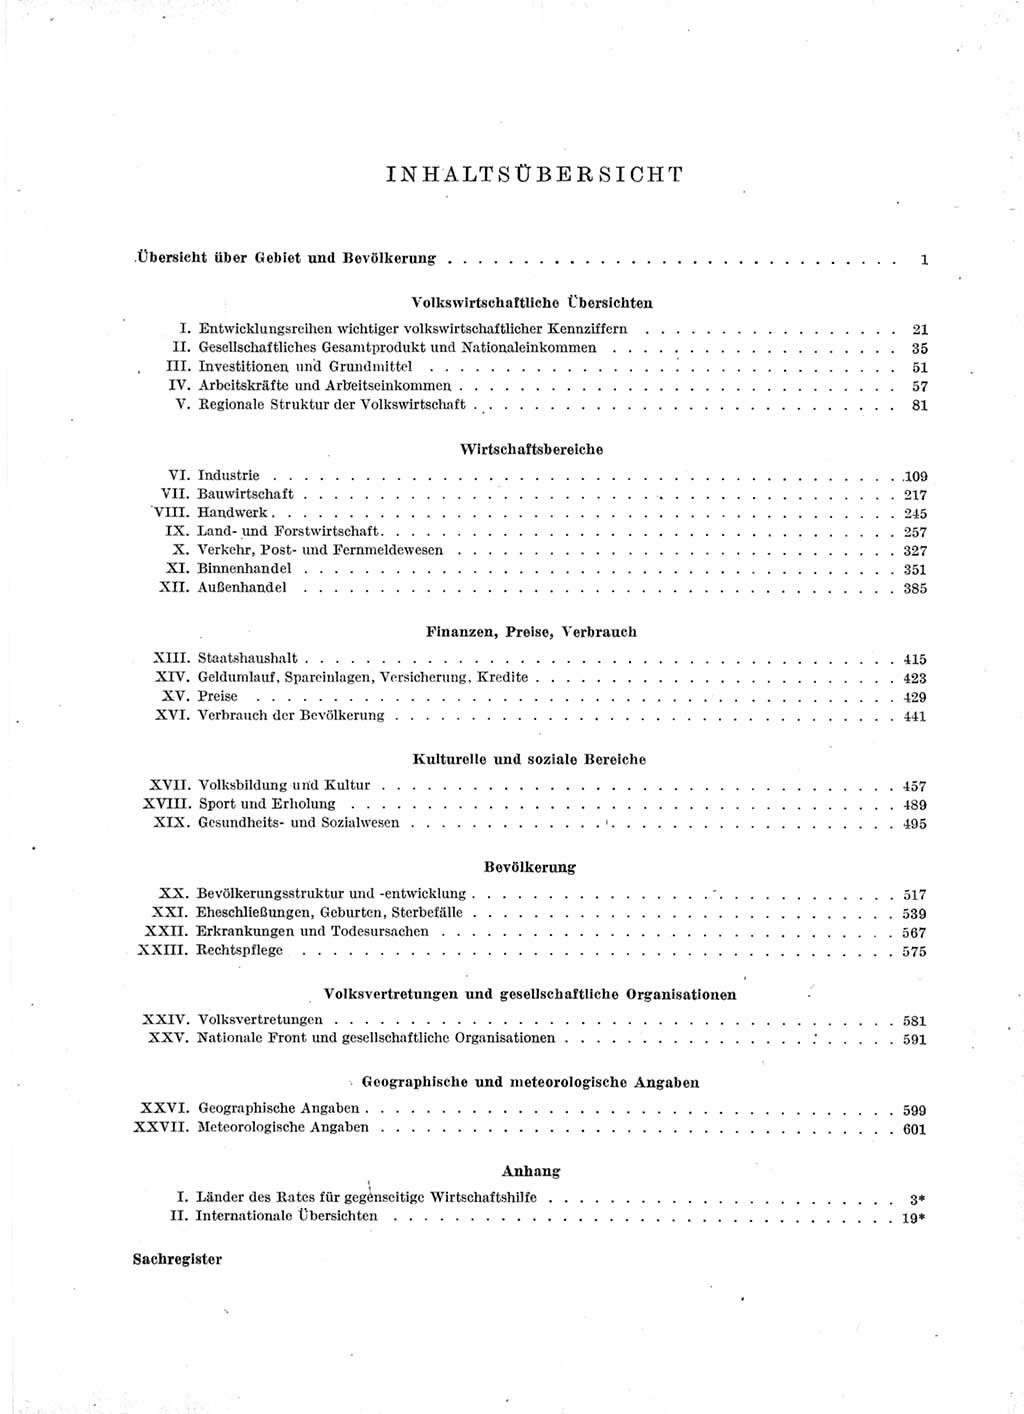 Statistisches Jahrbuch der Deutschen Demokratischen Republik (DDR) 1966, Seite 5 (Stat. Jb. DDR 1966, S. 5)